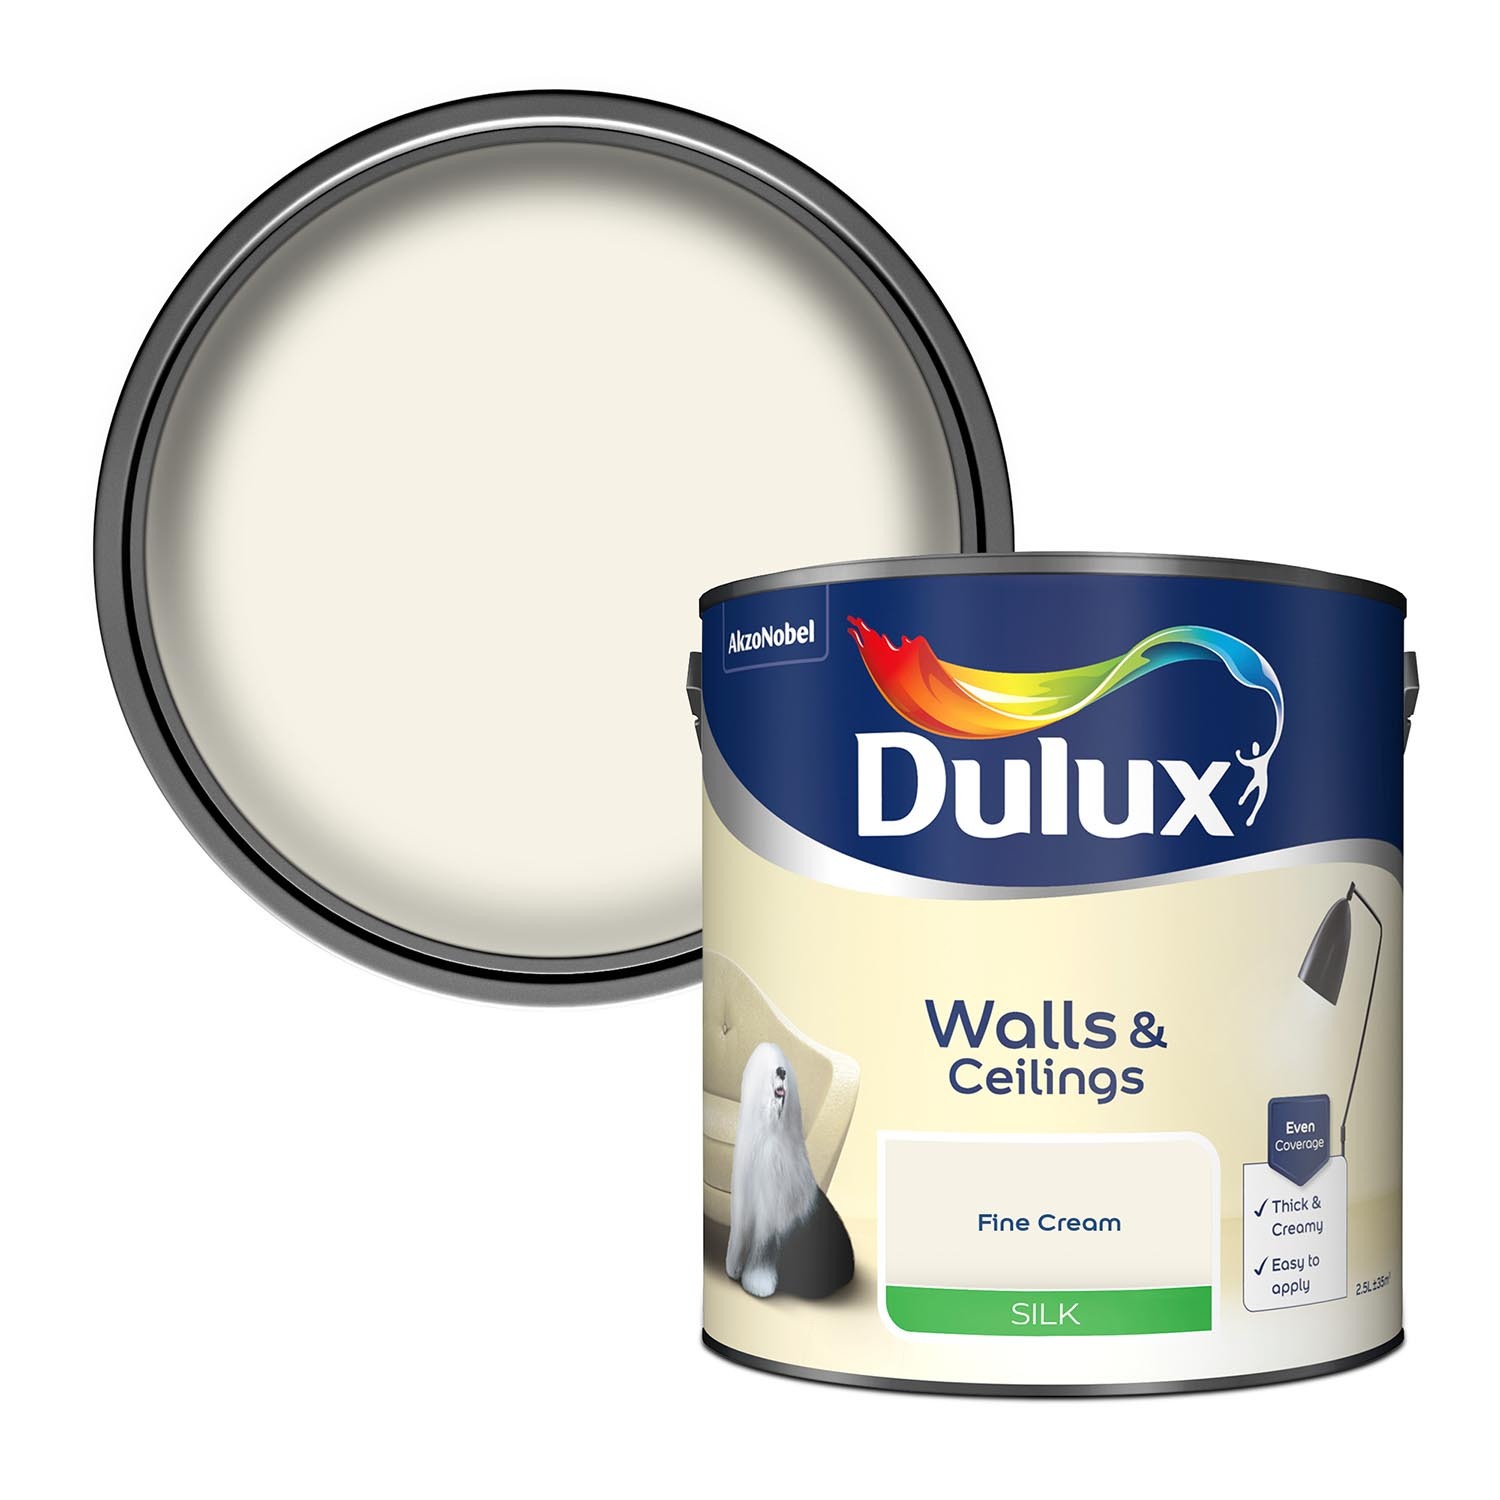 Dulux Walls & Ceilings Fine Cream Silk Emulsion Paint 2.5L Image 1